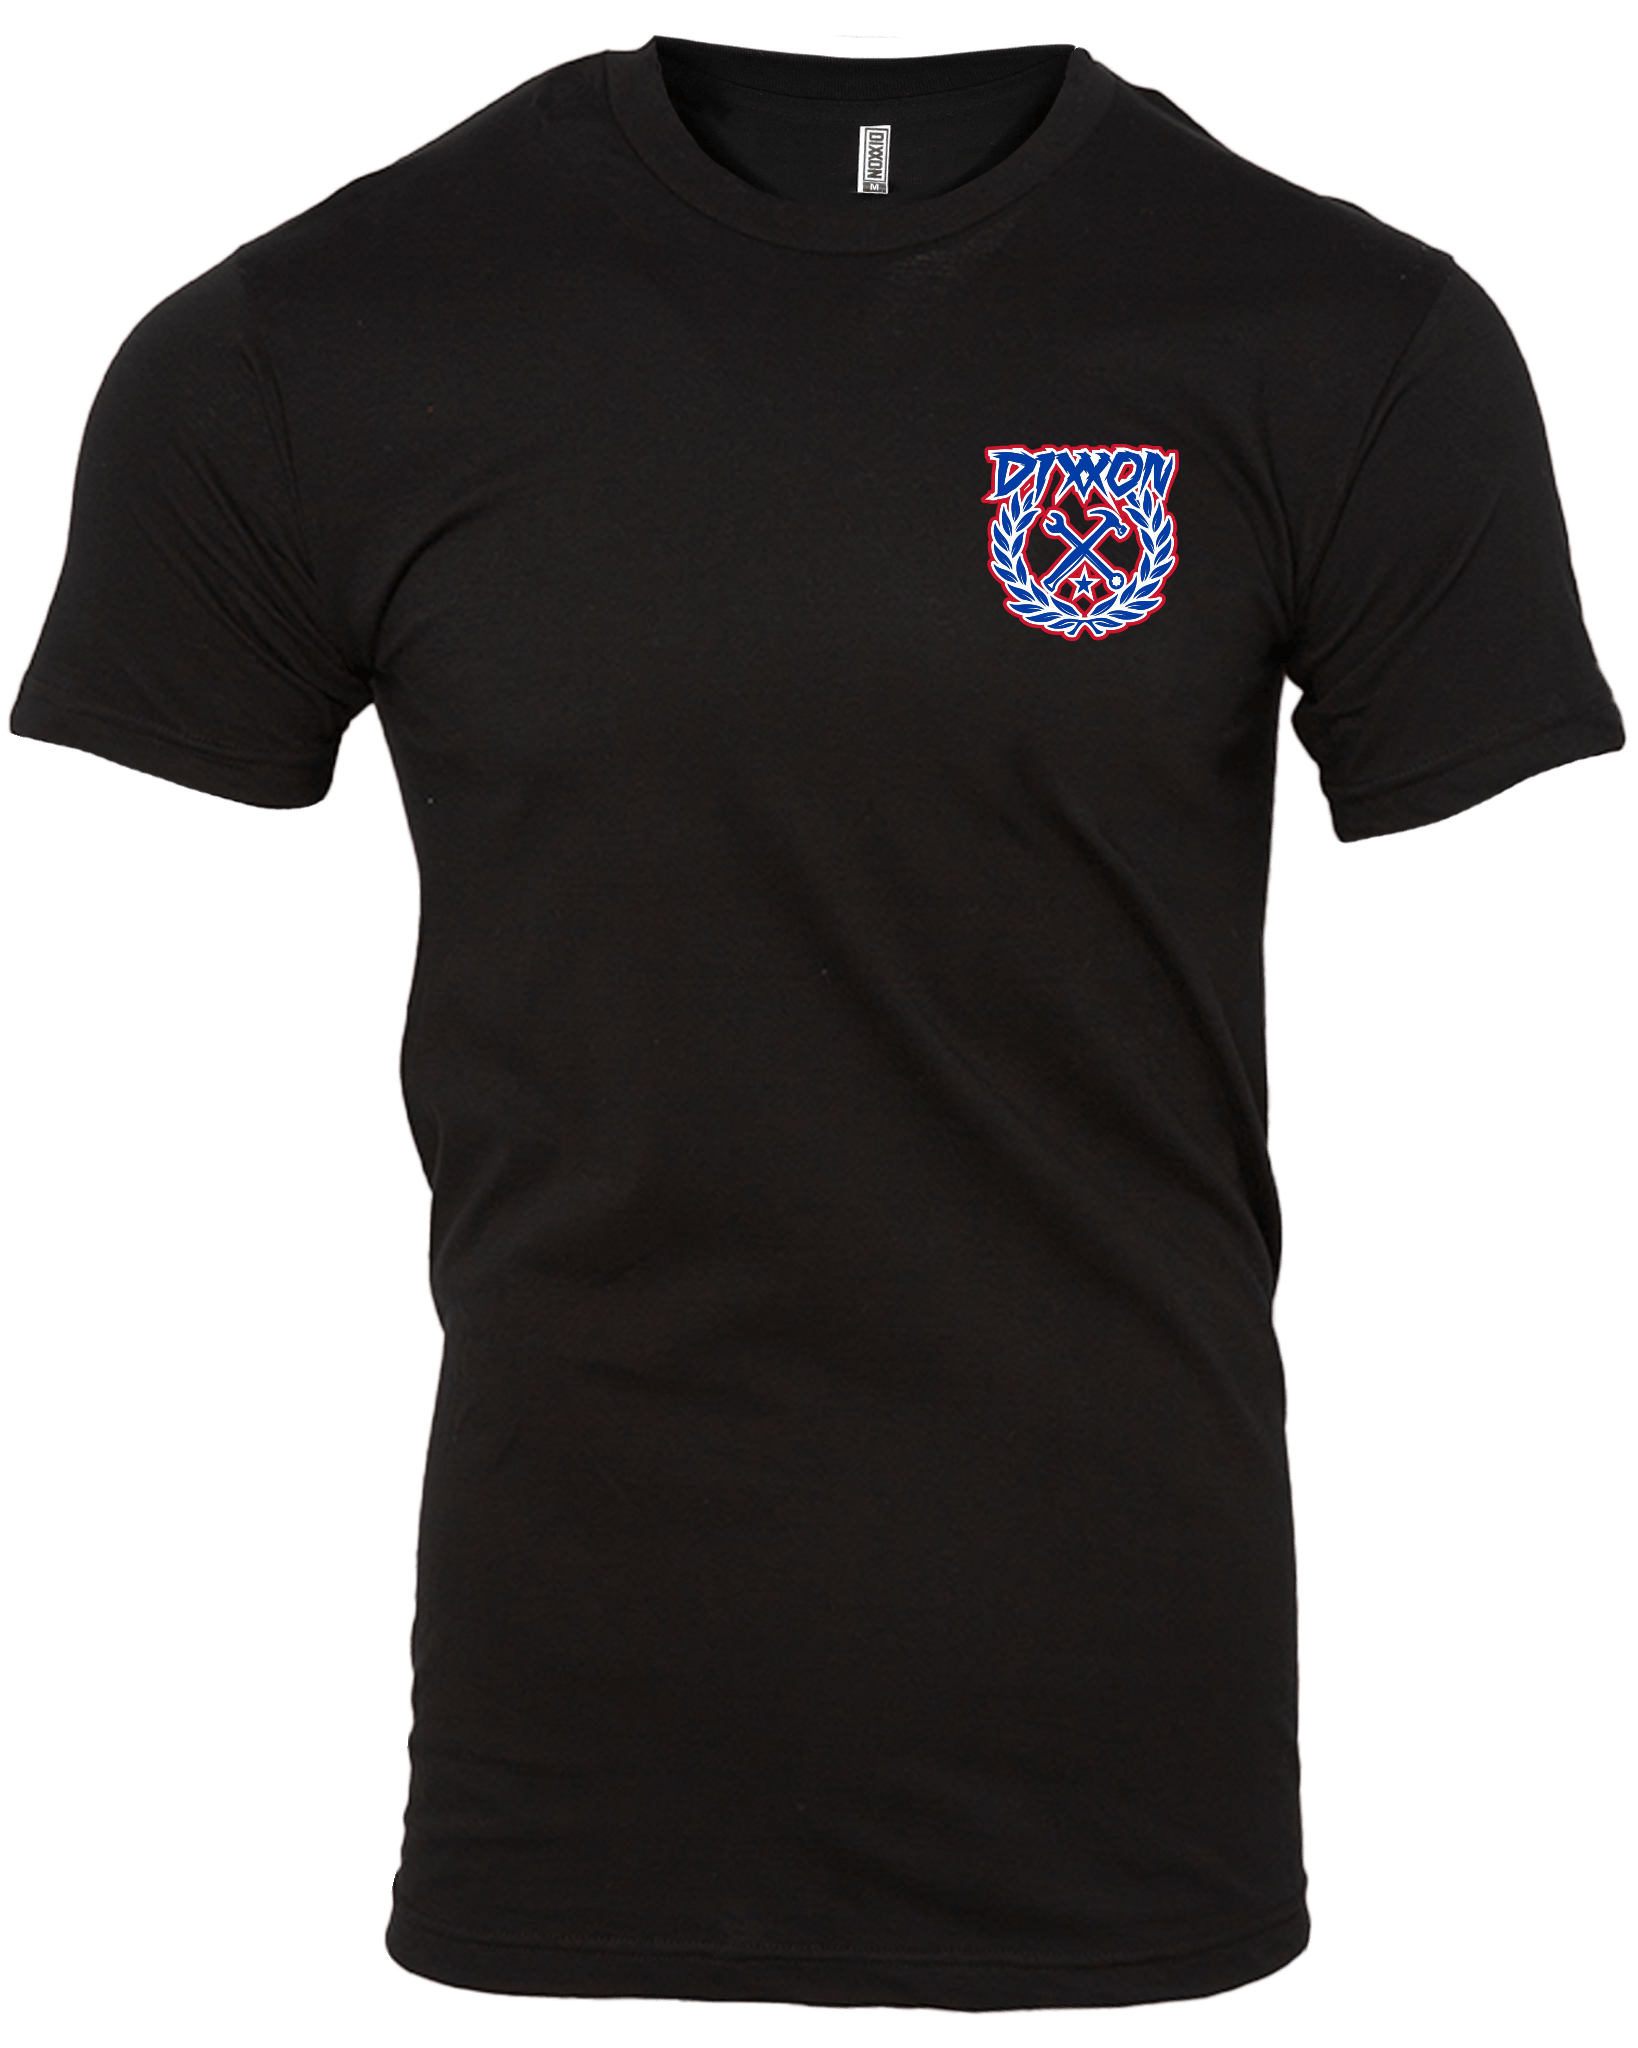 overskridelsen Seaport specielt Men's USA Party Crest T-Shirt | Dixxon Flannel Co.